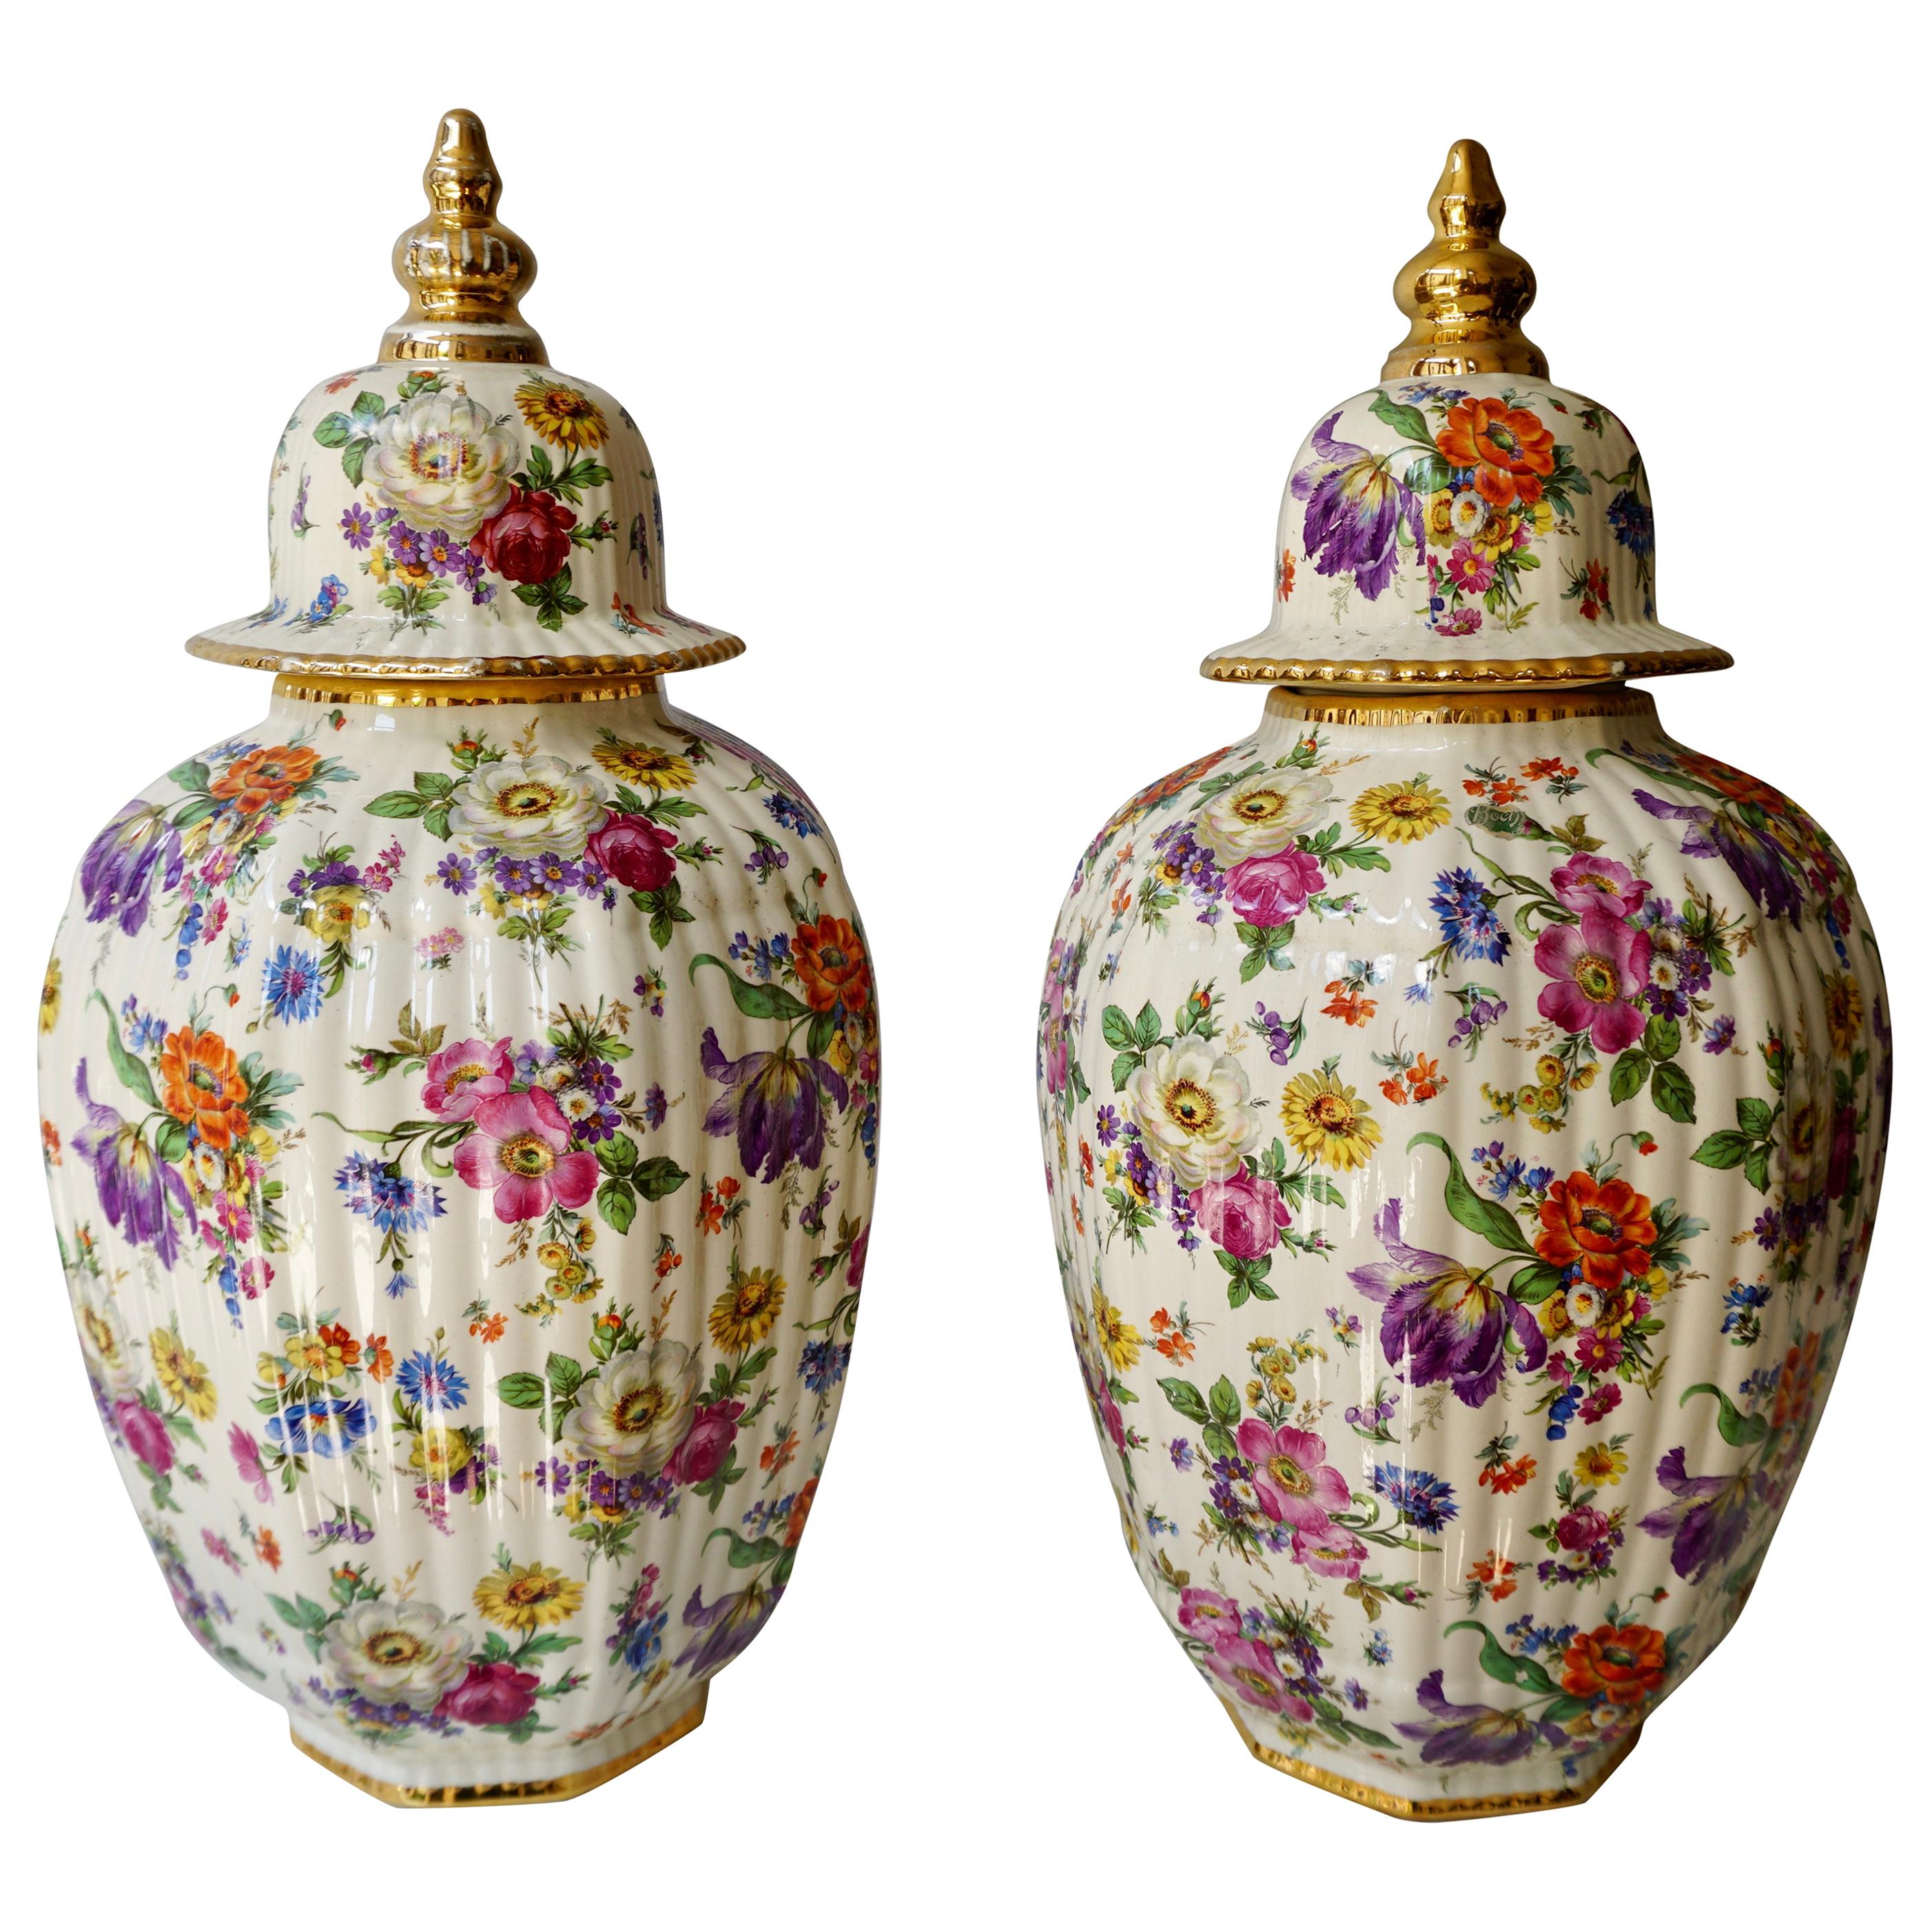 Vase de Boch Frères avec motifs floraux stylisés